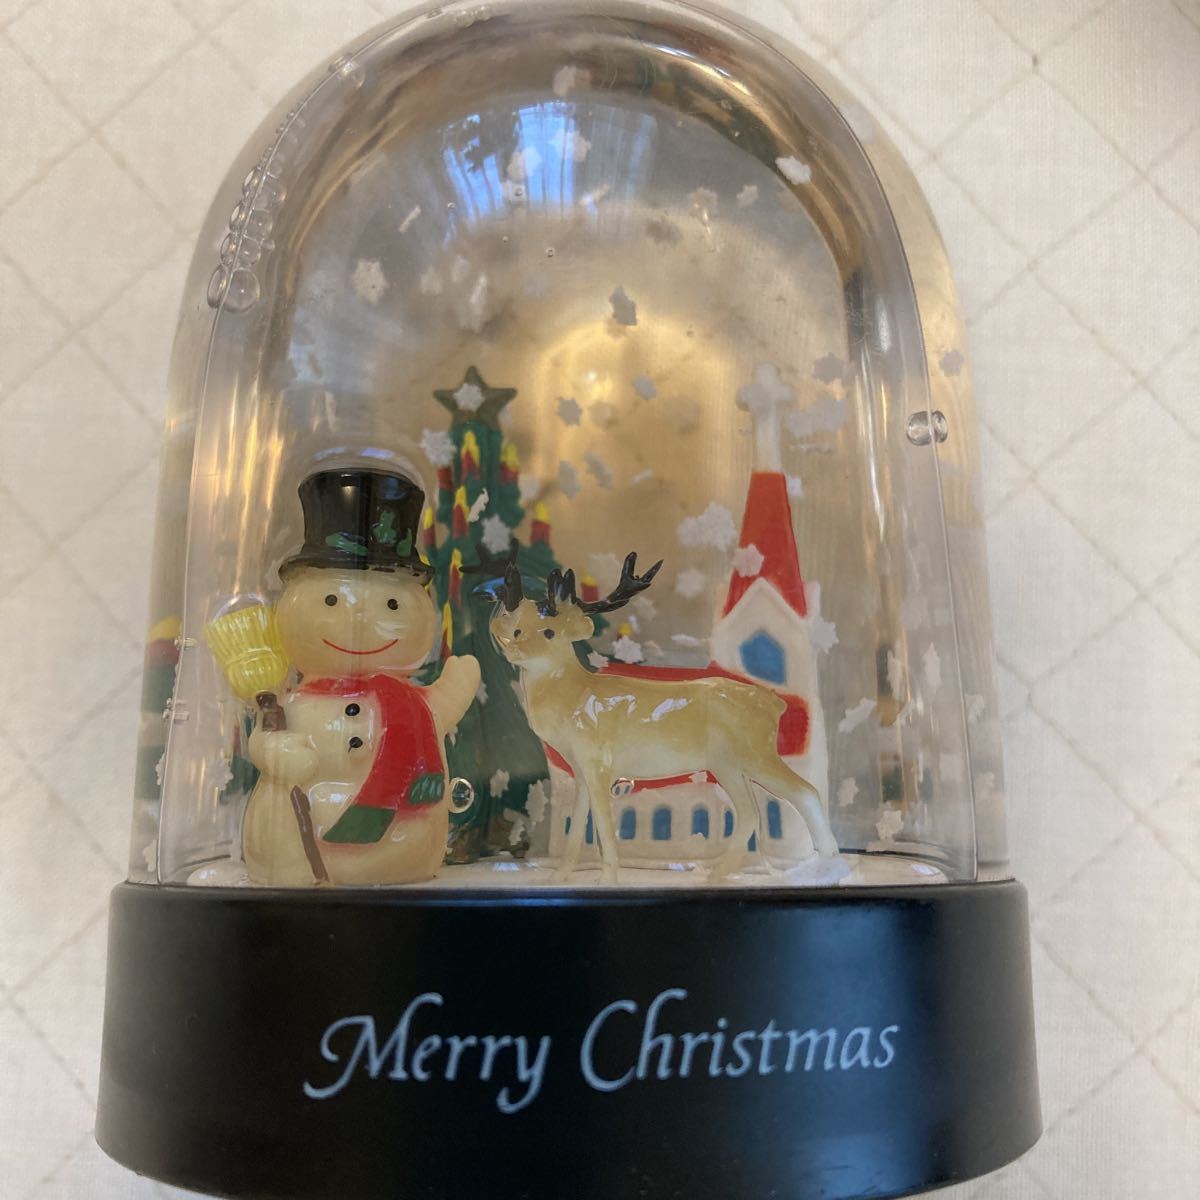  Рождество "снежный шар" дополнение Daiso мягкая игрушка 2 пункт Santa Claus снеговик кукла северный олень tree ... снег . Mai . retro 